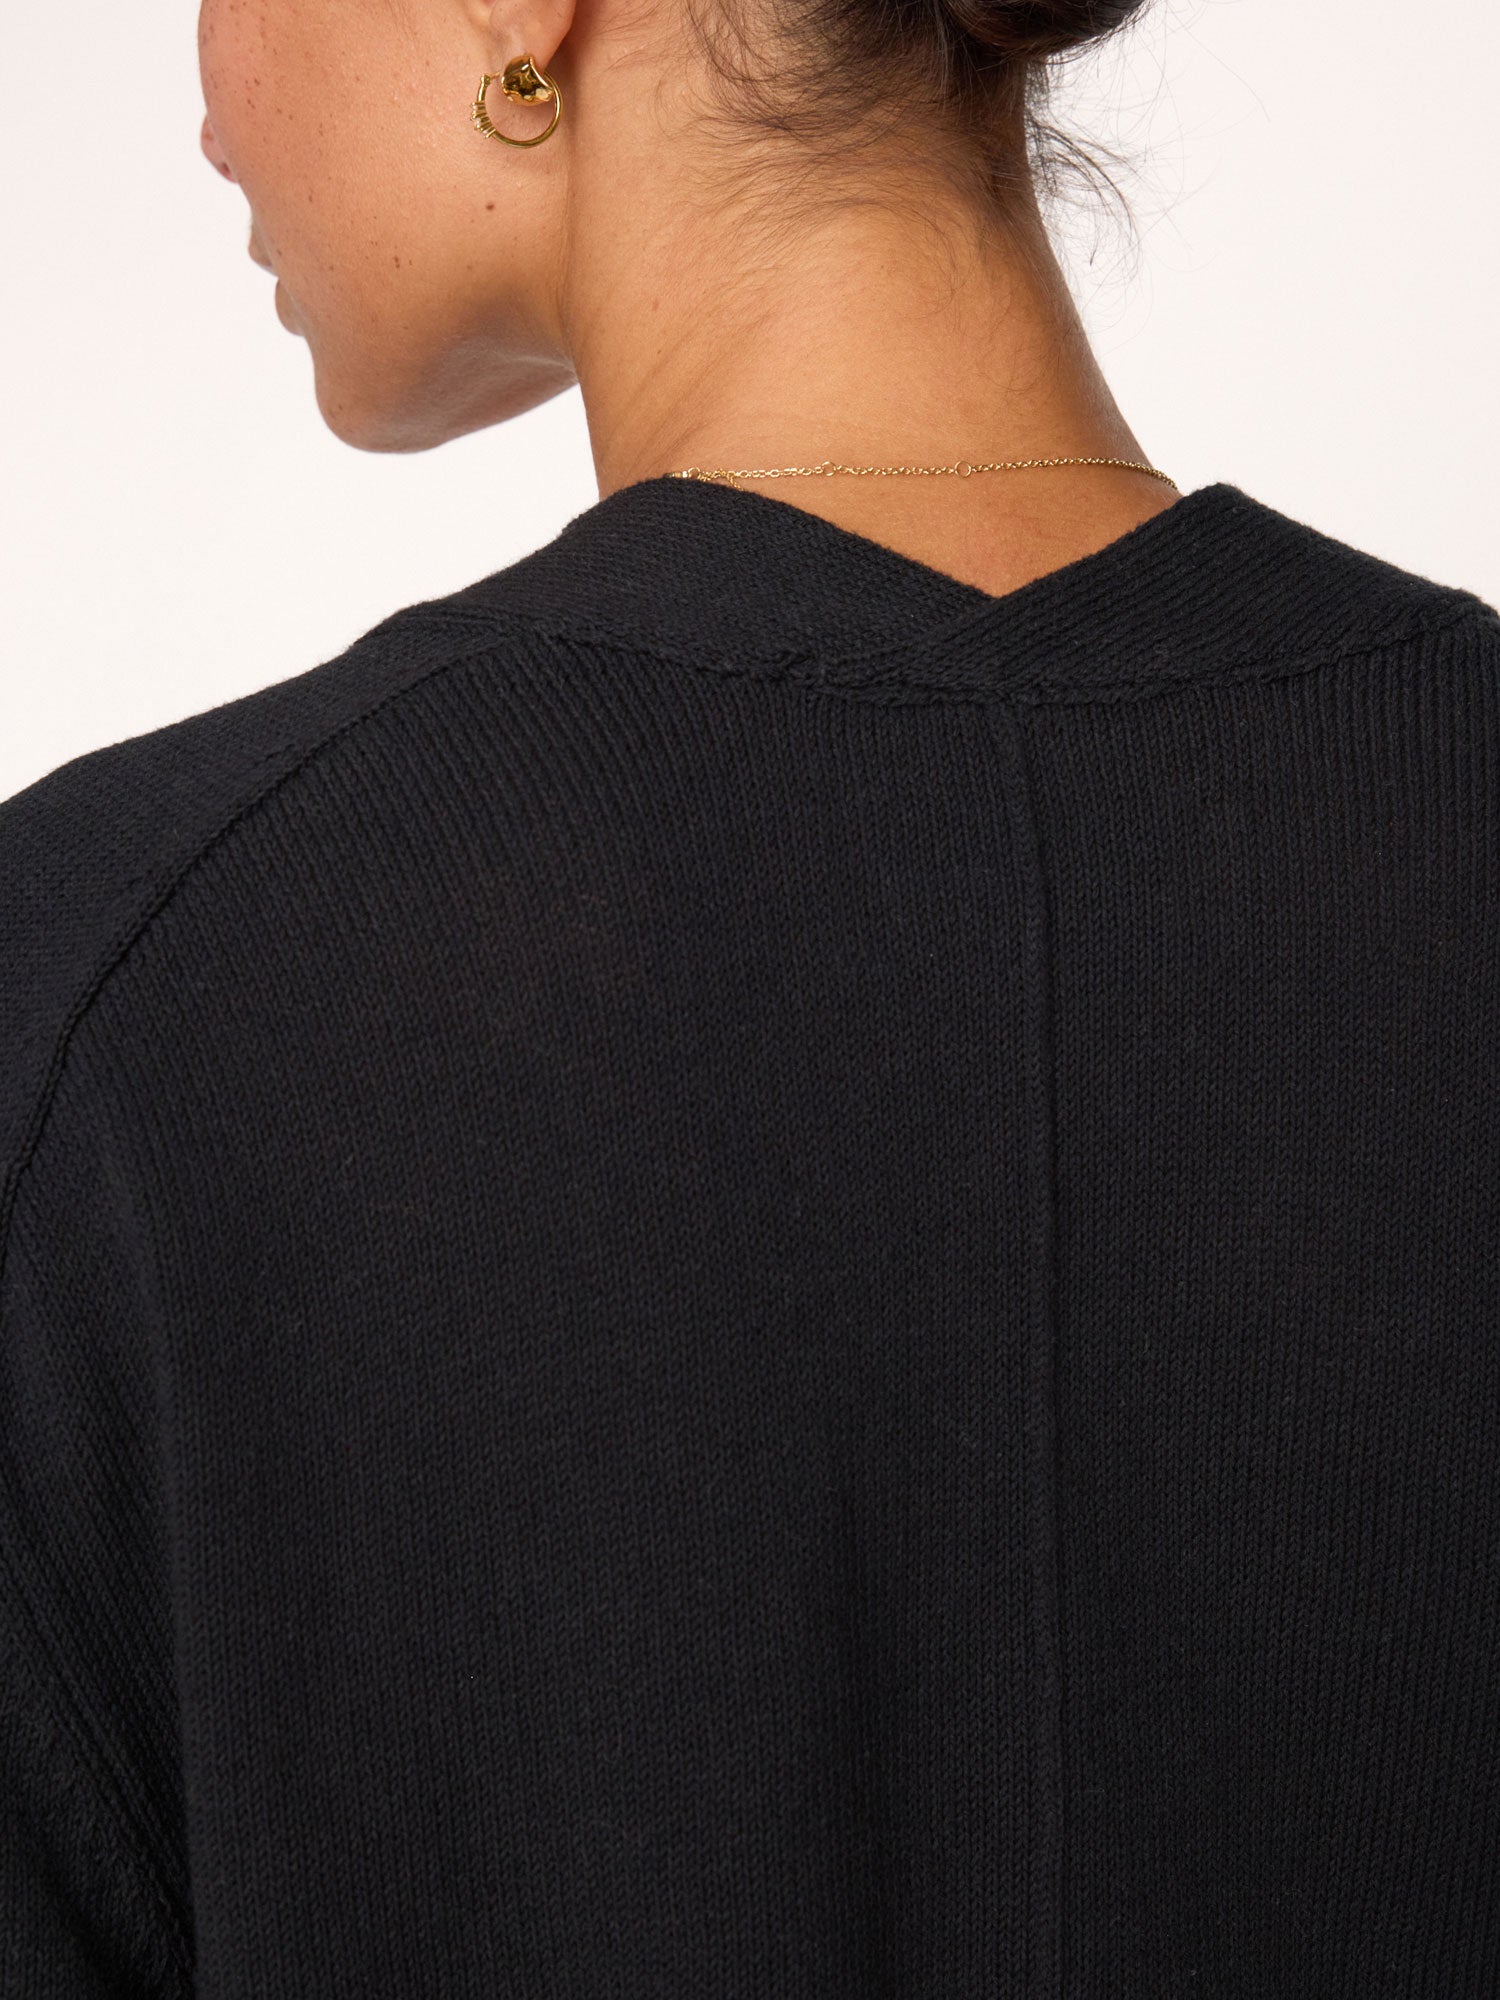 Women's Imogen Vee Sweater in Black Onyx